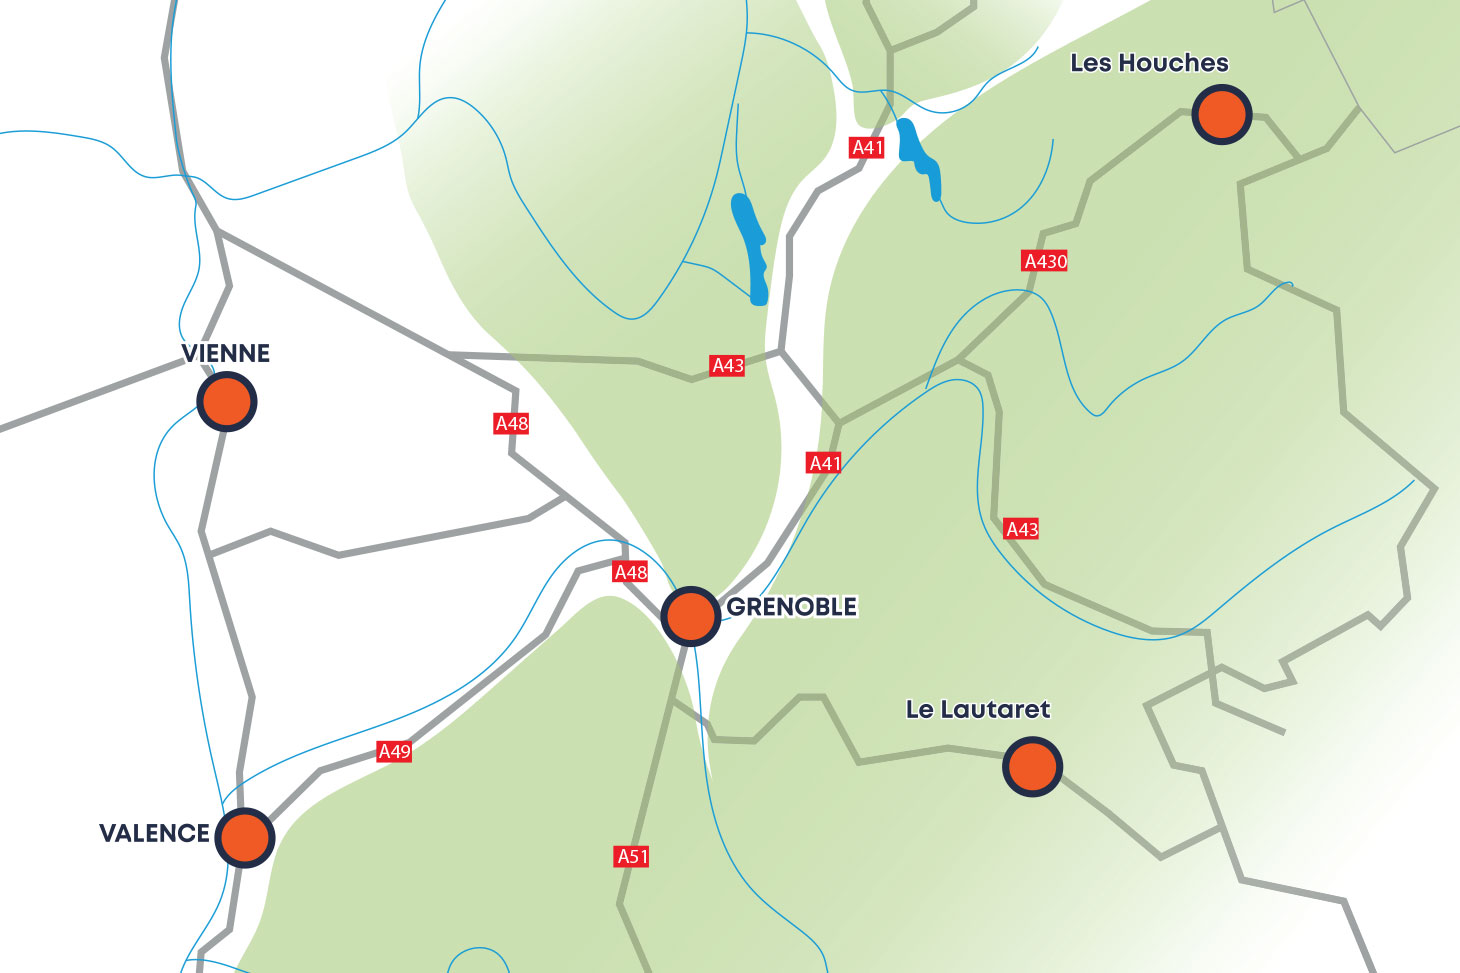 Localisation géographique des campus de l'Université Grenoble Alpes : Grenoble, Valence, Vienne, Les Houches, Le Lautaret